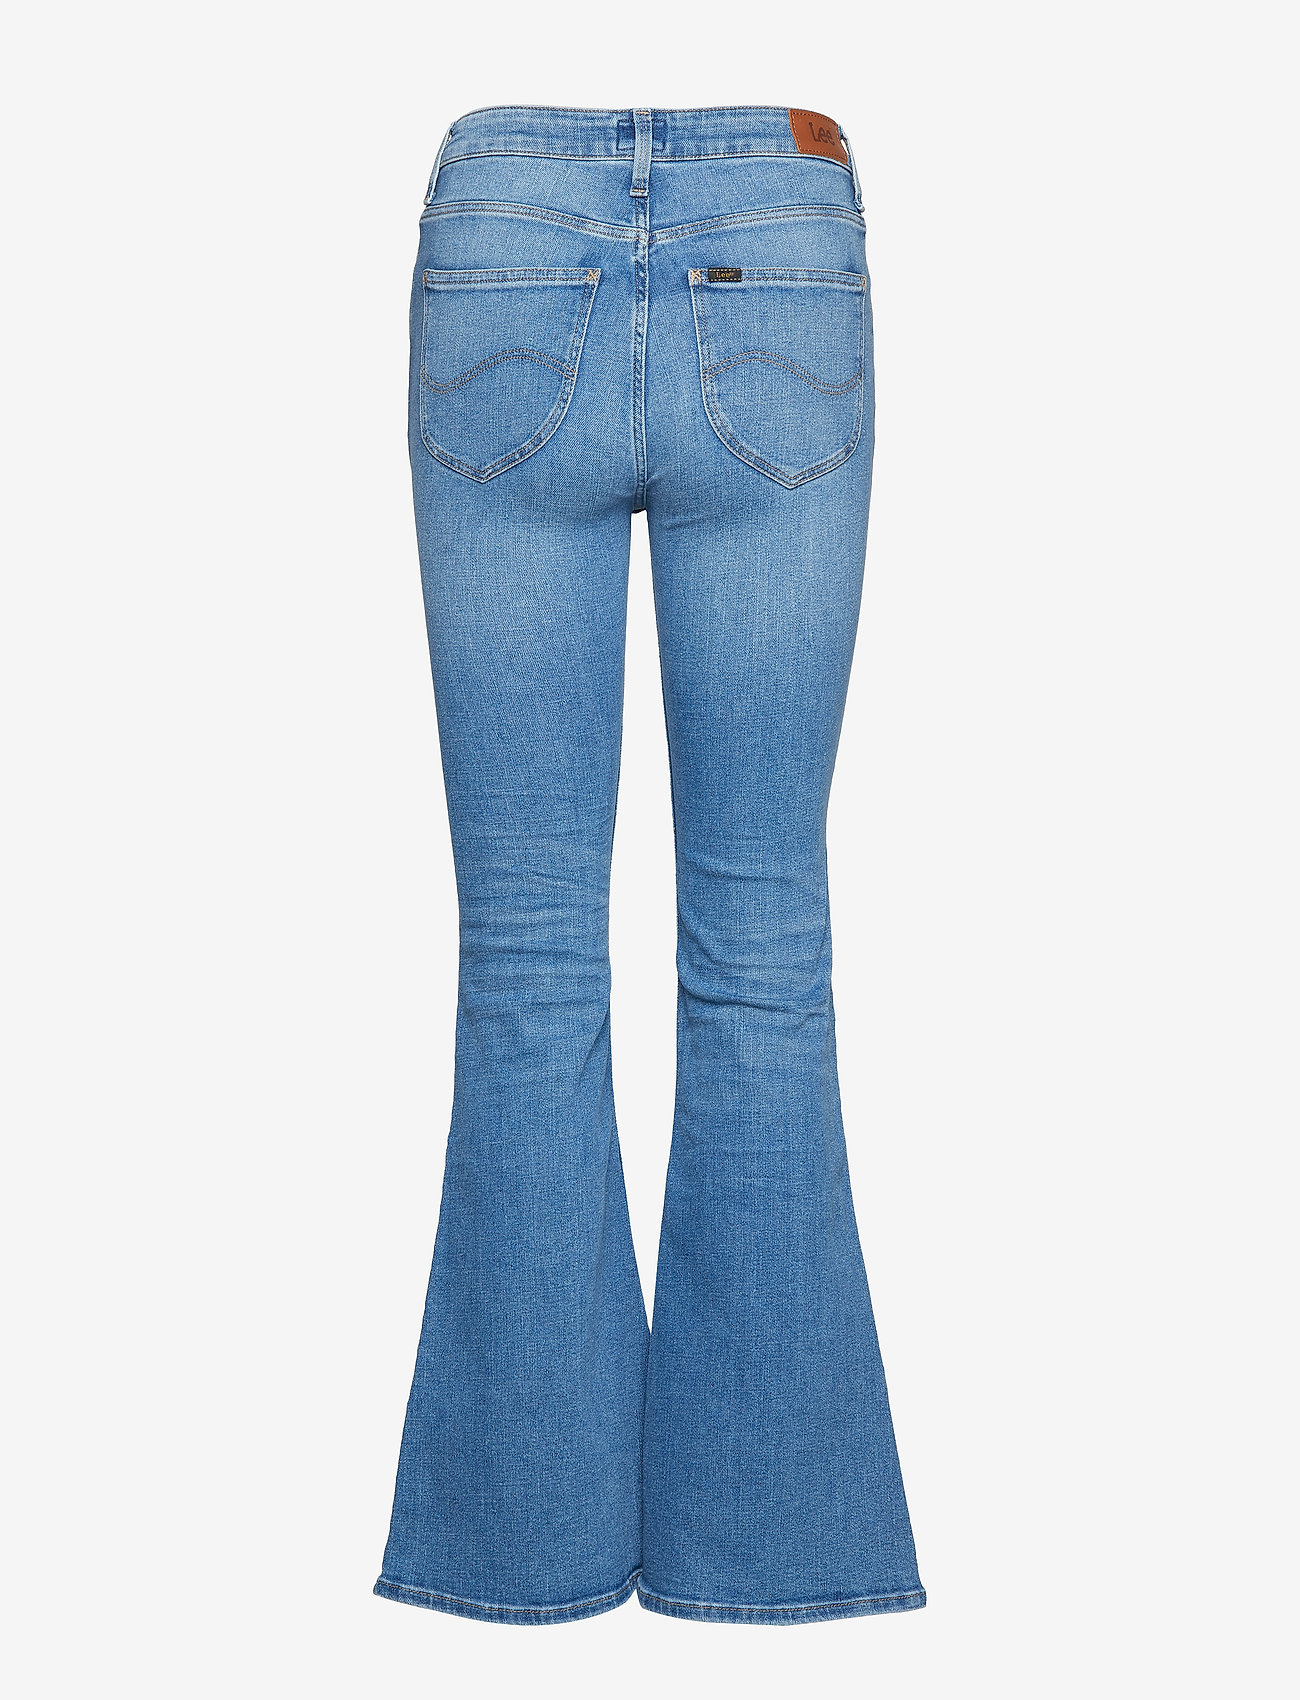 Lee Jeans - BREESE - utsvängda jeans - jaded - 1